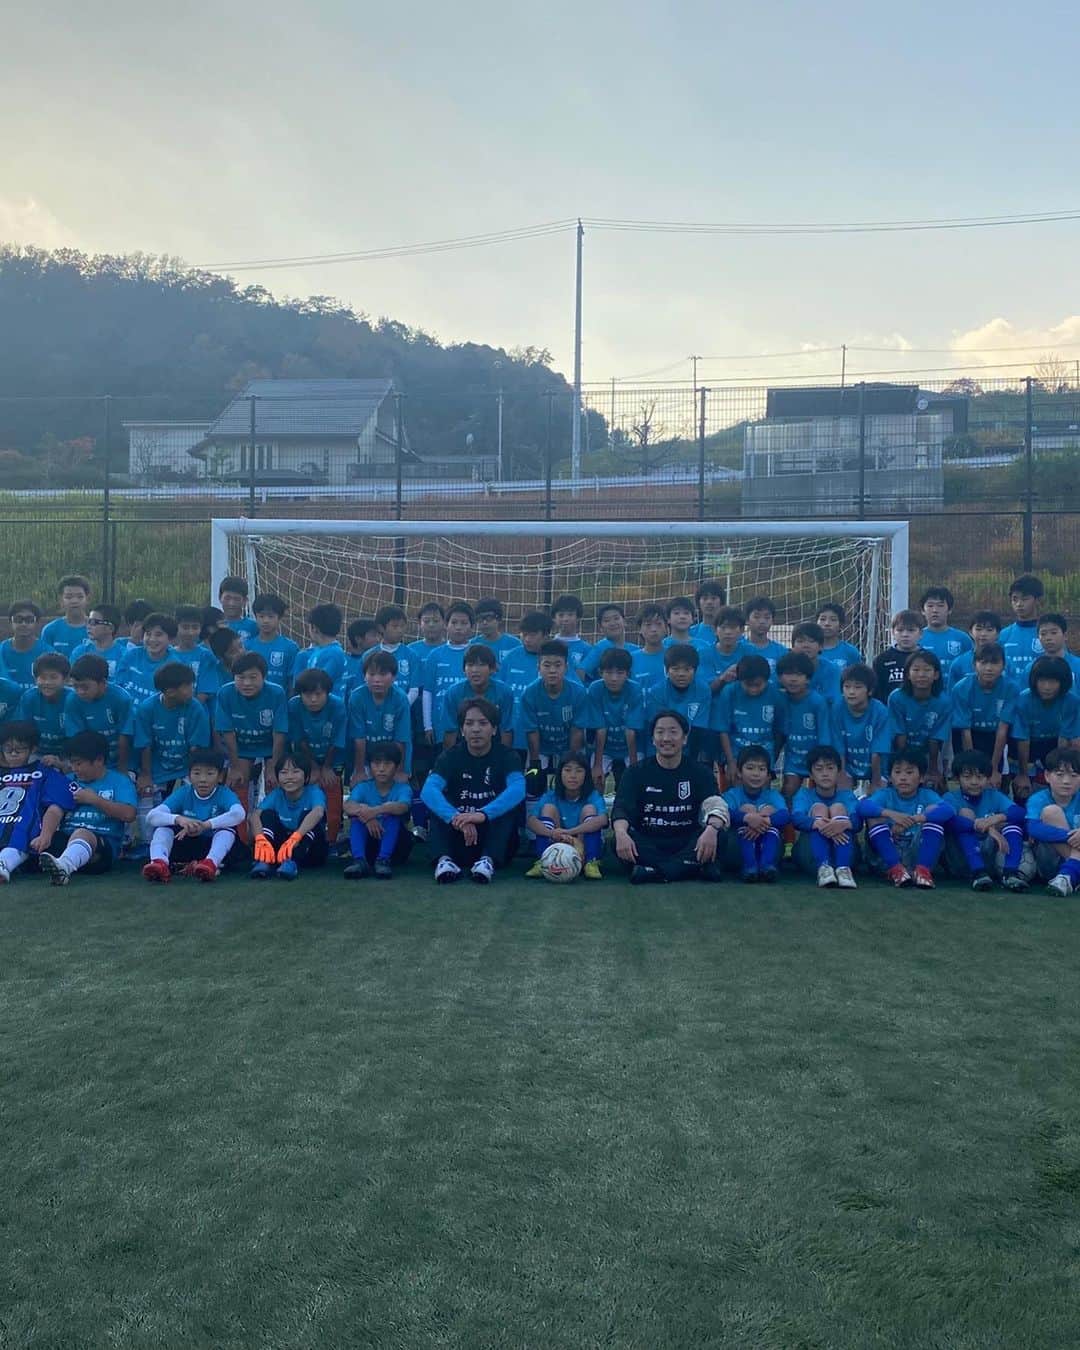 寺田紳一のインスタグラム：「昨日、地元である茨木市で茨木サッカークリニック2021が開催されました(^^)  午前の部、午後の部合わせて約150人の子供たち(^^)  みんな積極的にプレーしてくれて本当に楽しい時間でした(^^)  僕自身も指導者として凄く良い経験ができた最高の1日でした‼︎  今回のサッカークリニック開催にあたり協賛していただいた皆様、本当にありがとうございました‼︎  どんな時も楽しんだもん勝ち‼︎  #茨木サッカークリニック2021  #サッカークリニック #元jリーガーによるサッカークリニック  #三島コーポレーション #高島整形外科 #小林整形外科 #株式会社ゴウダ #西川印刷 #炭火焼き牛タン縁家  #ごちそう鉄板吉和  #釜揚うどん友商 #株式会社のむのむ #株式会社MONOLITH #三河べいす #ハポロコ #木村敦志 #地元 #茨木 #どんな時も楽しんだもん勝ち」